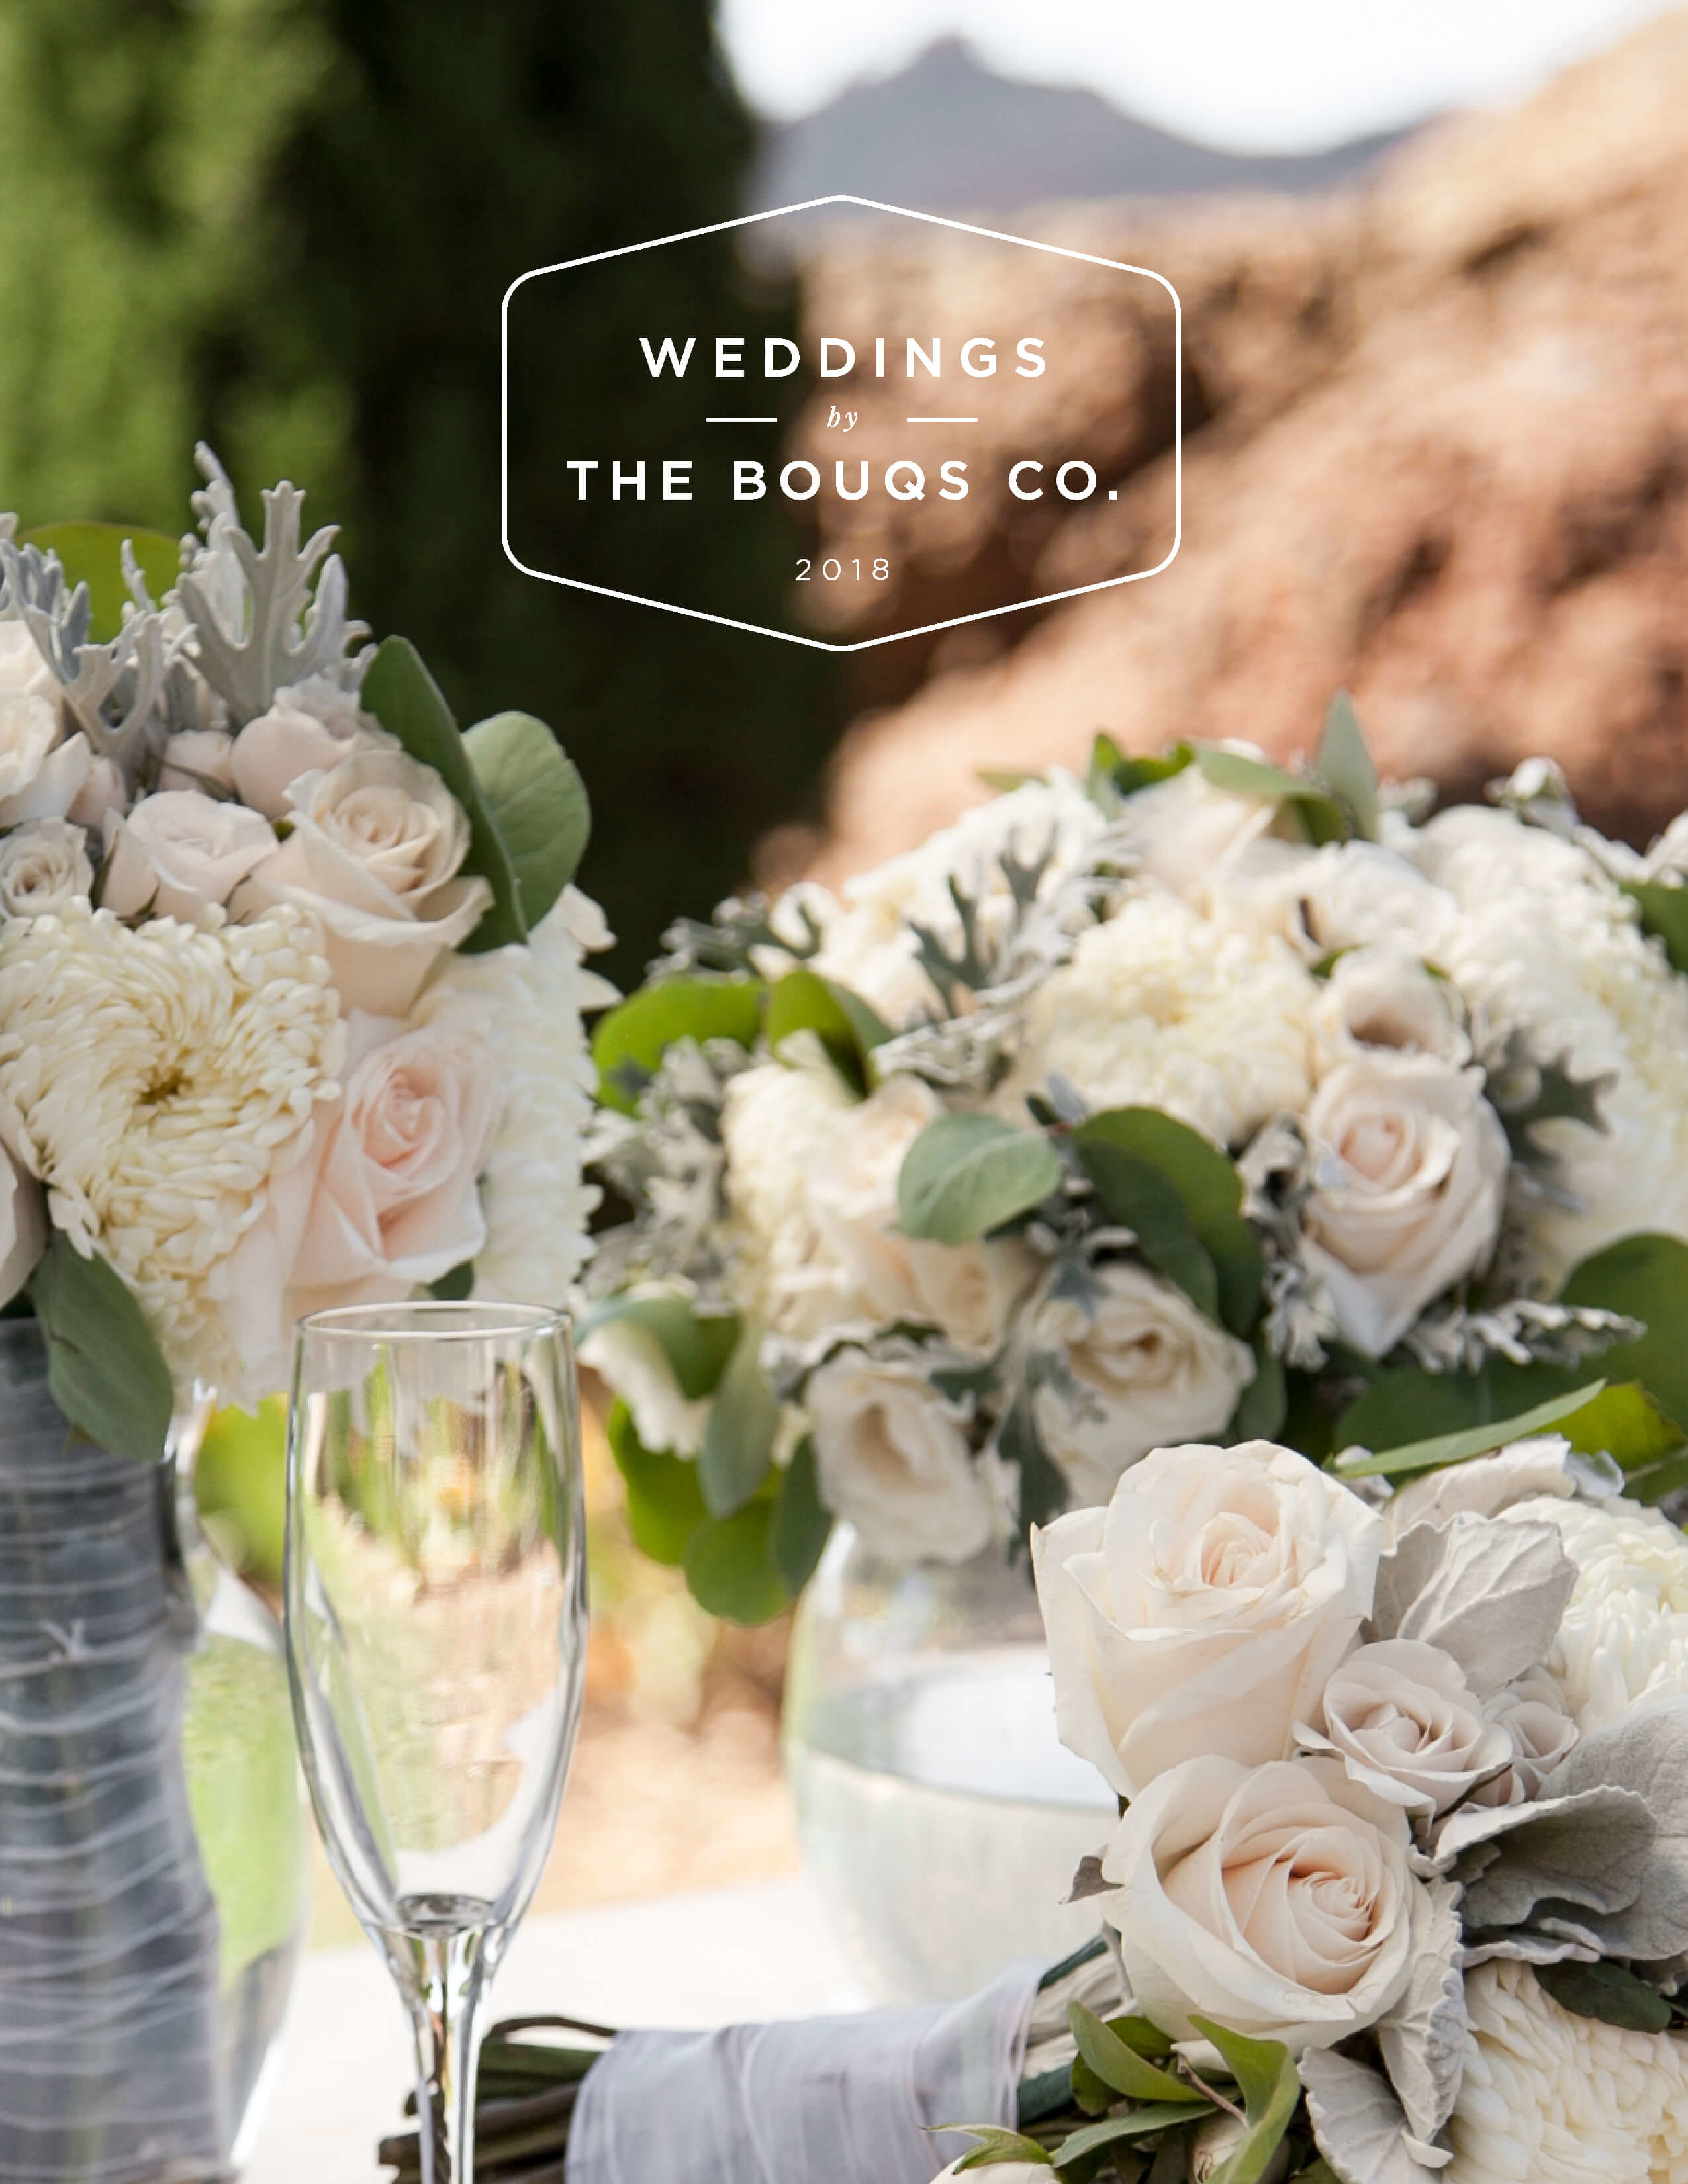 Wedding Flowers - Bridal Bouquets & Arrangements - The Bouqs Co.